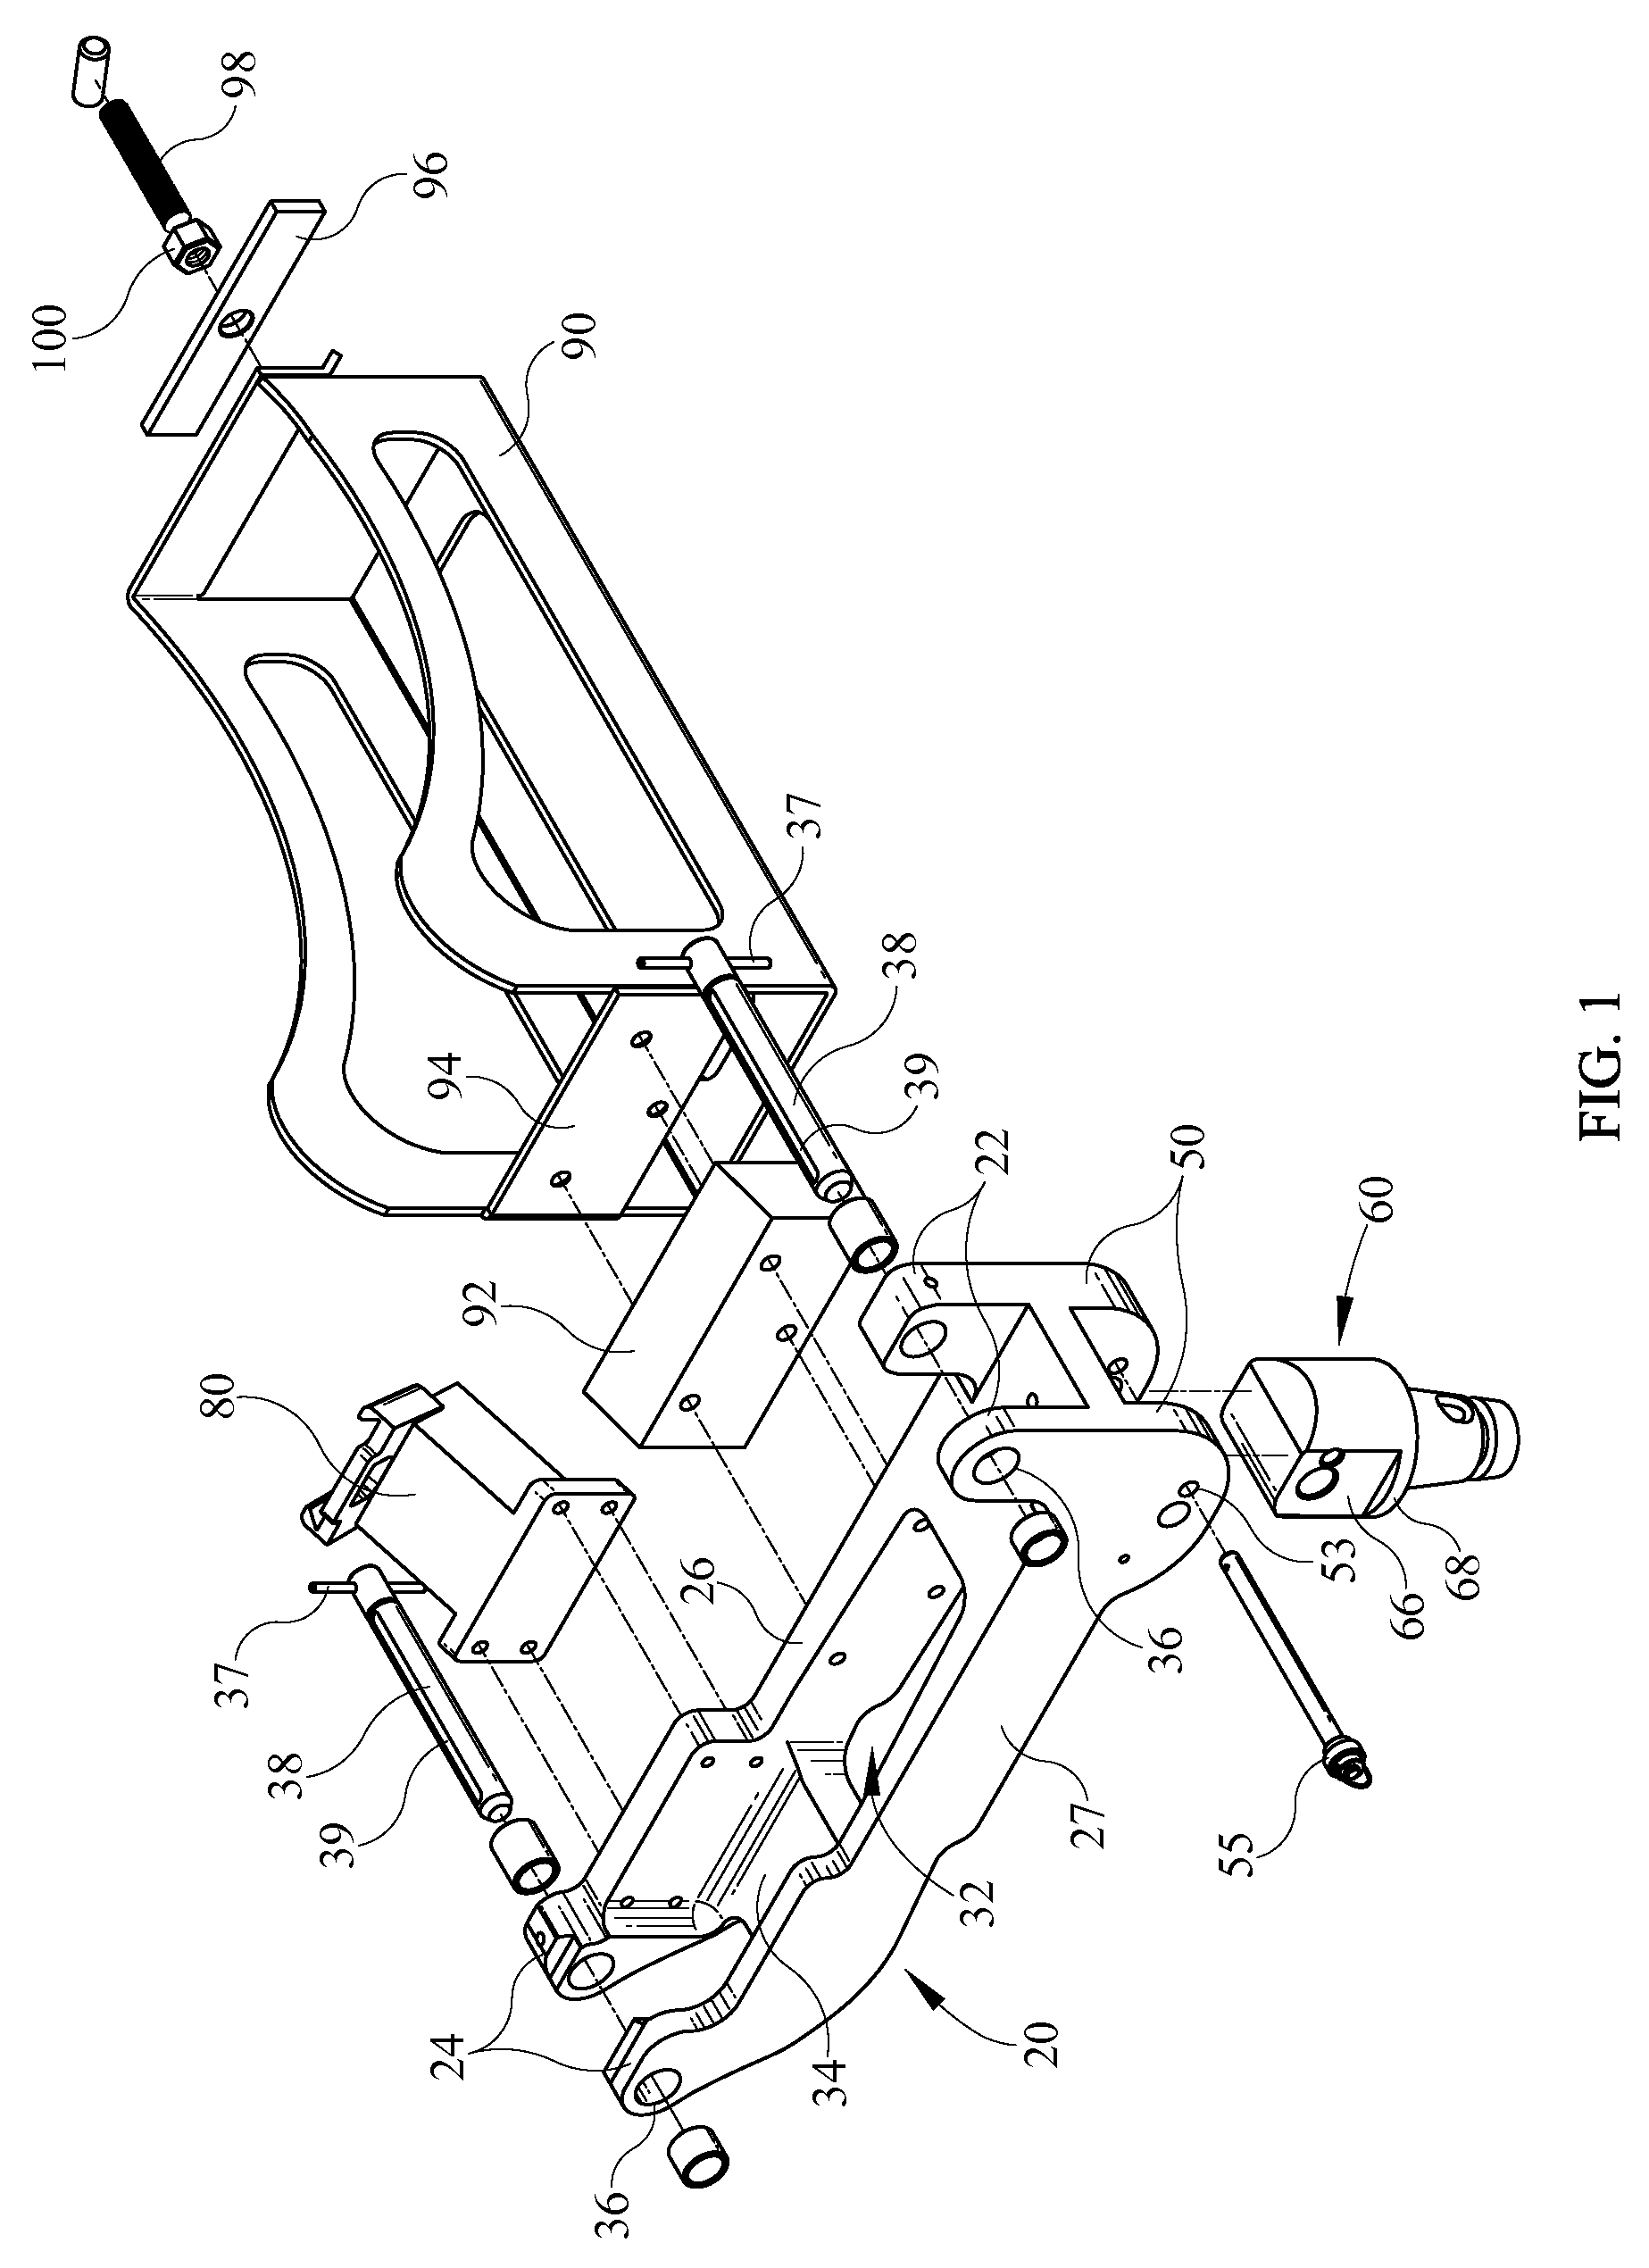 Tri-mount cradle system